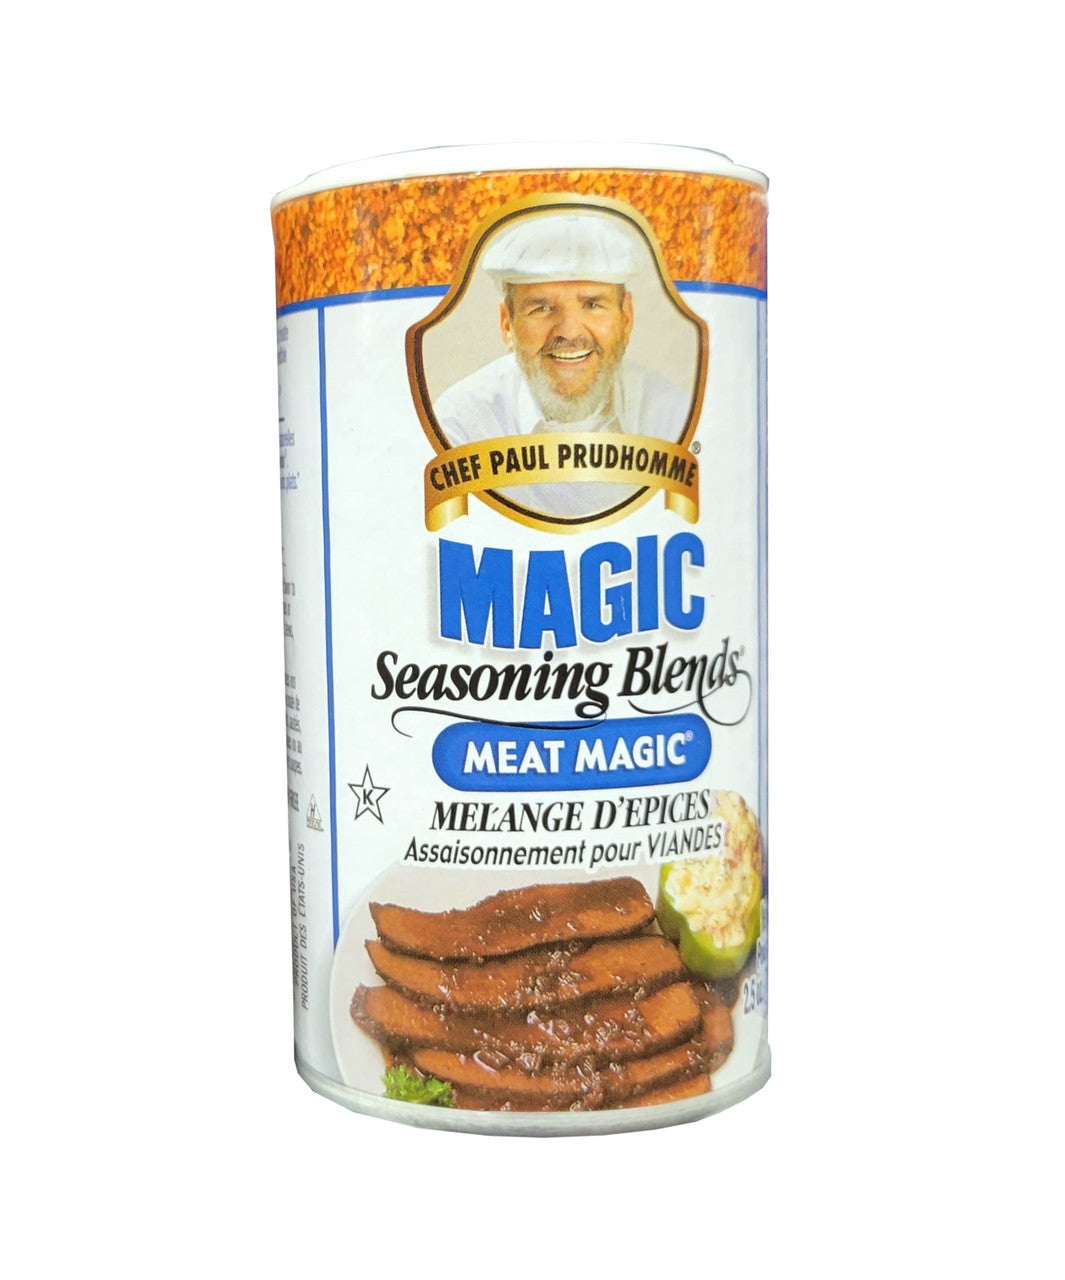 Chef Paul Prudhomme's Magic Seasoning Blends, Meat Seasoning, 71g